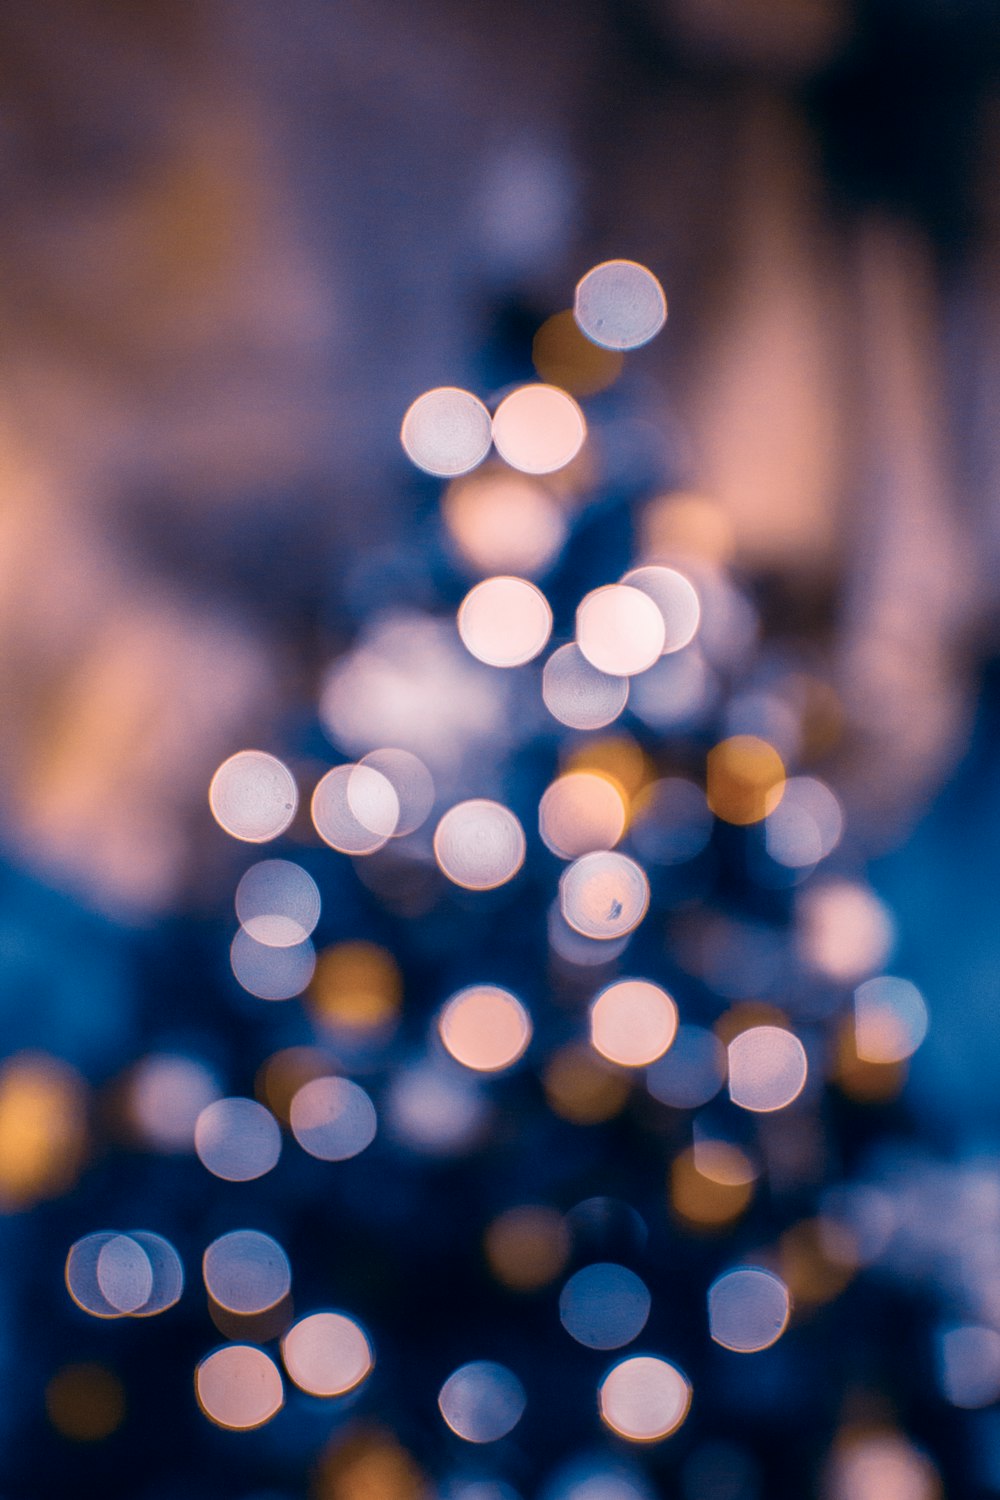 Uma foto desfocada de uma árvore de Natal iluminada